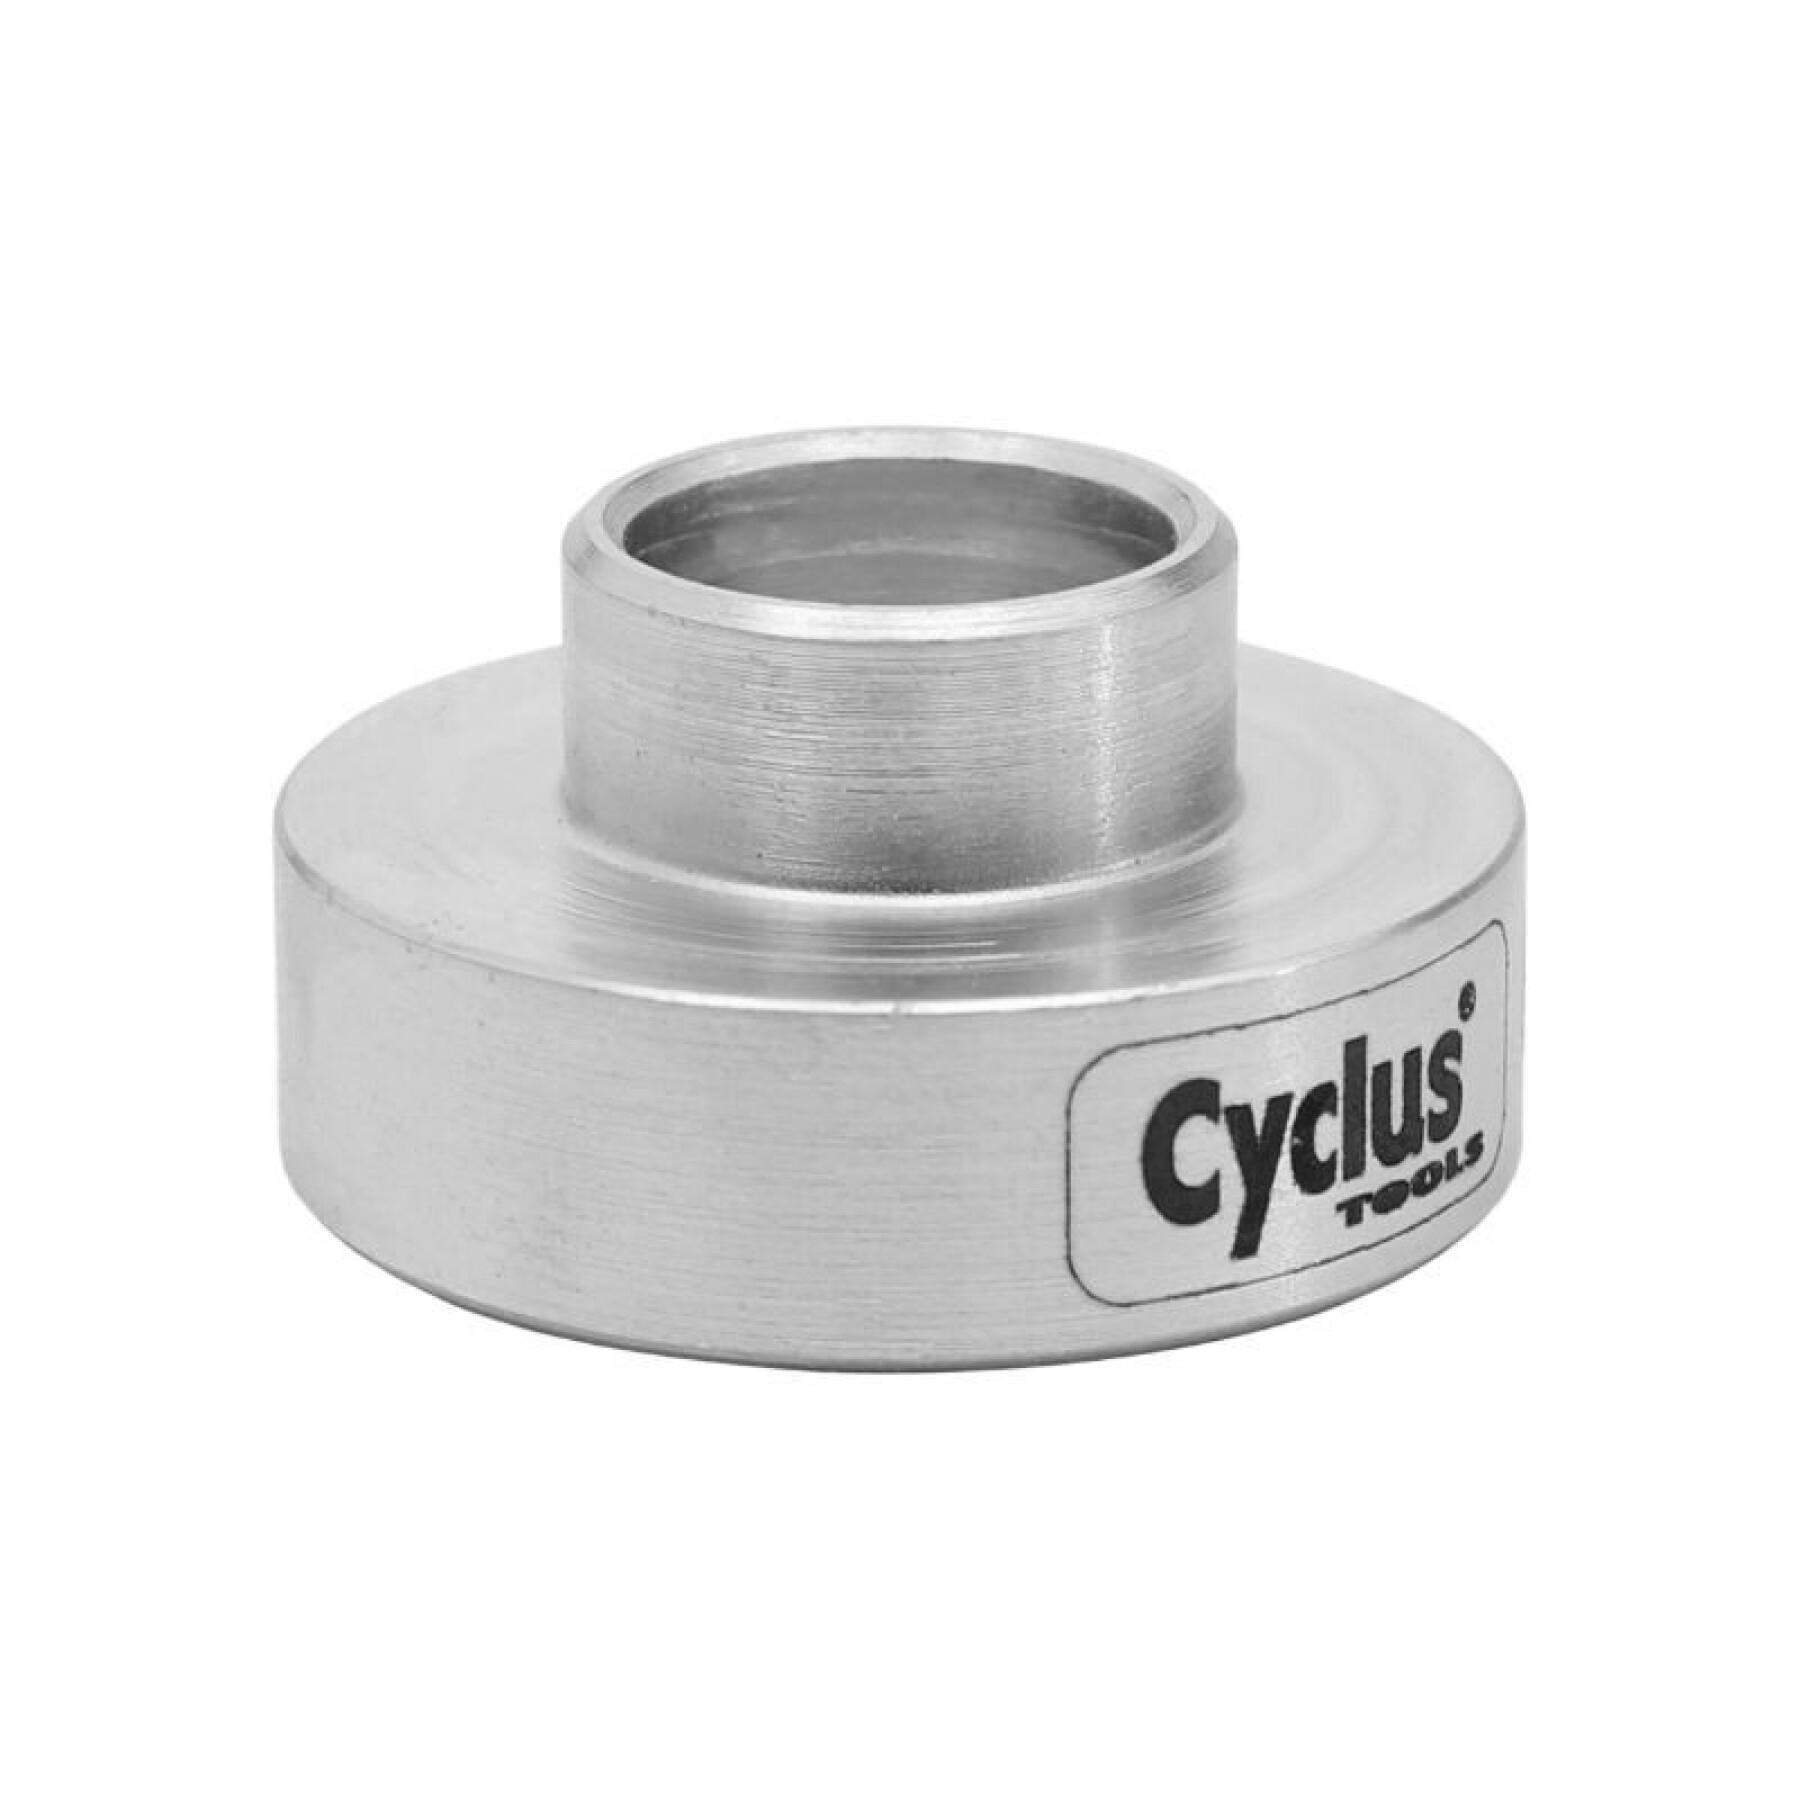 Outil pro support roulement à utiliser avec le presse roulement Cyclus ref  180126 - - Porte-vélos - Bagagerie et Transport - Urbain